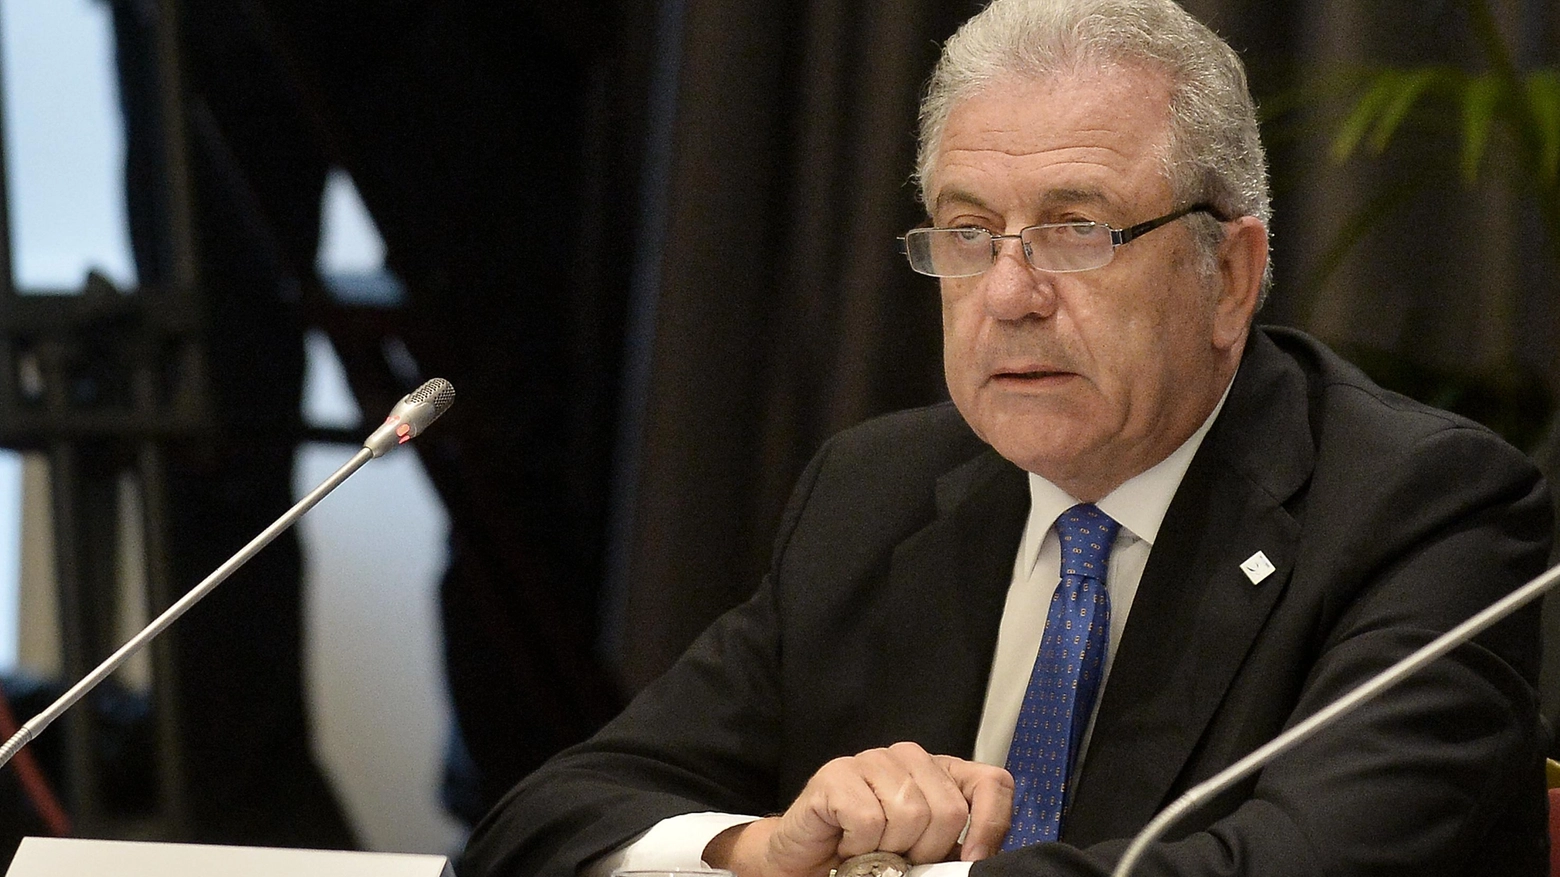 Dimitris Avramopoulos, 69 anni, è stato commissario europeo dal 2014 al 2019